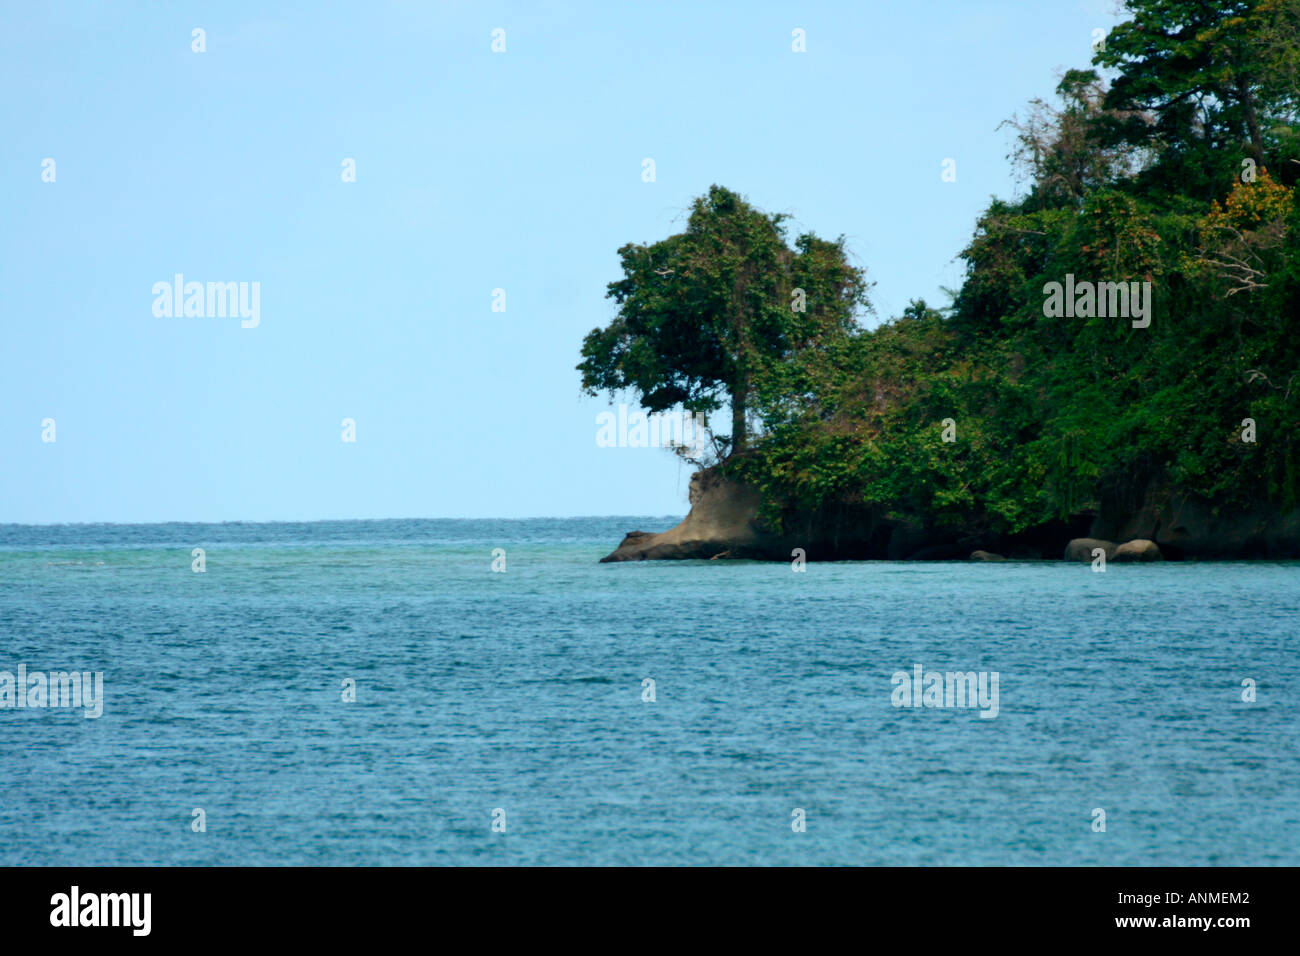 Las azules aguas bordeado por bosques verdes en un lado en Jolly boya Andaman Foto de stock